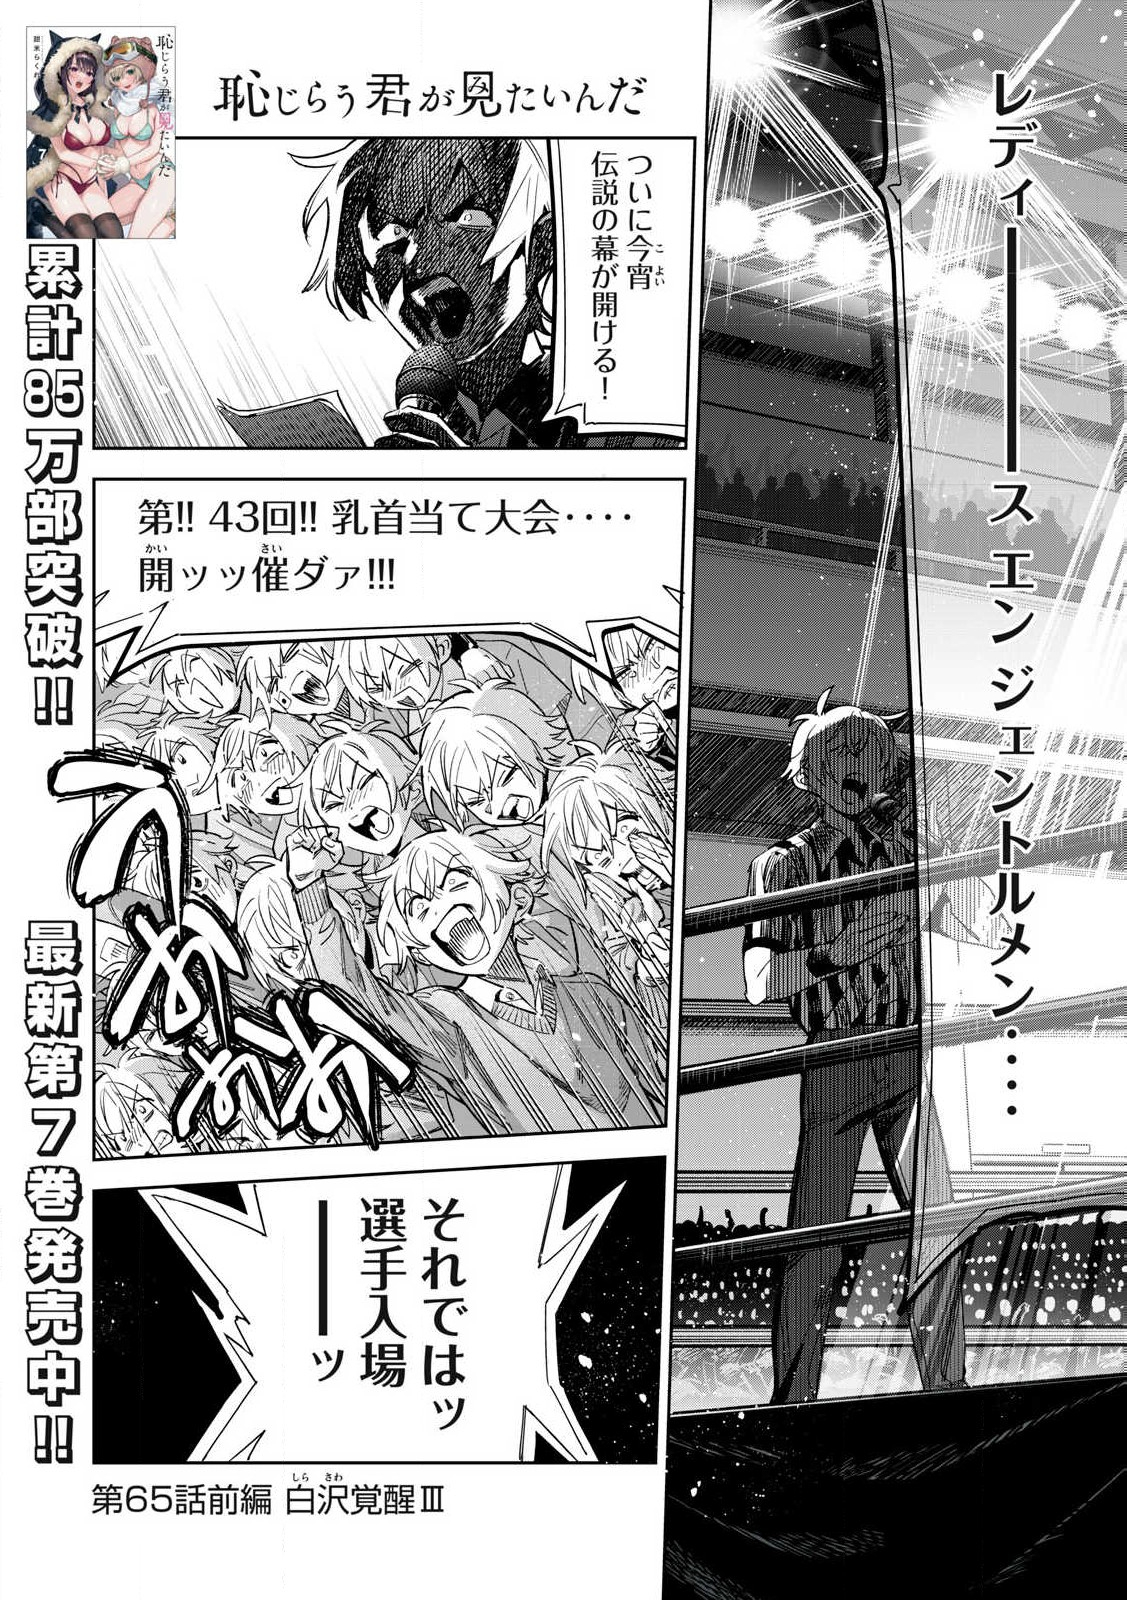 Hajirau Kimi ga Mitainda - Chapter 65.1 - Page 1